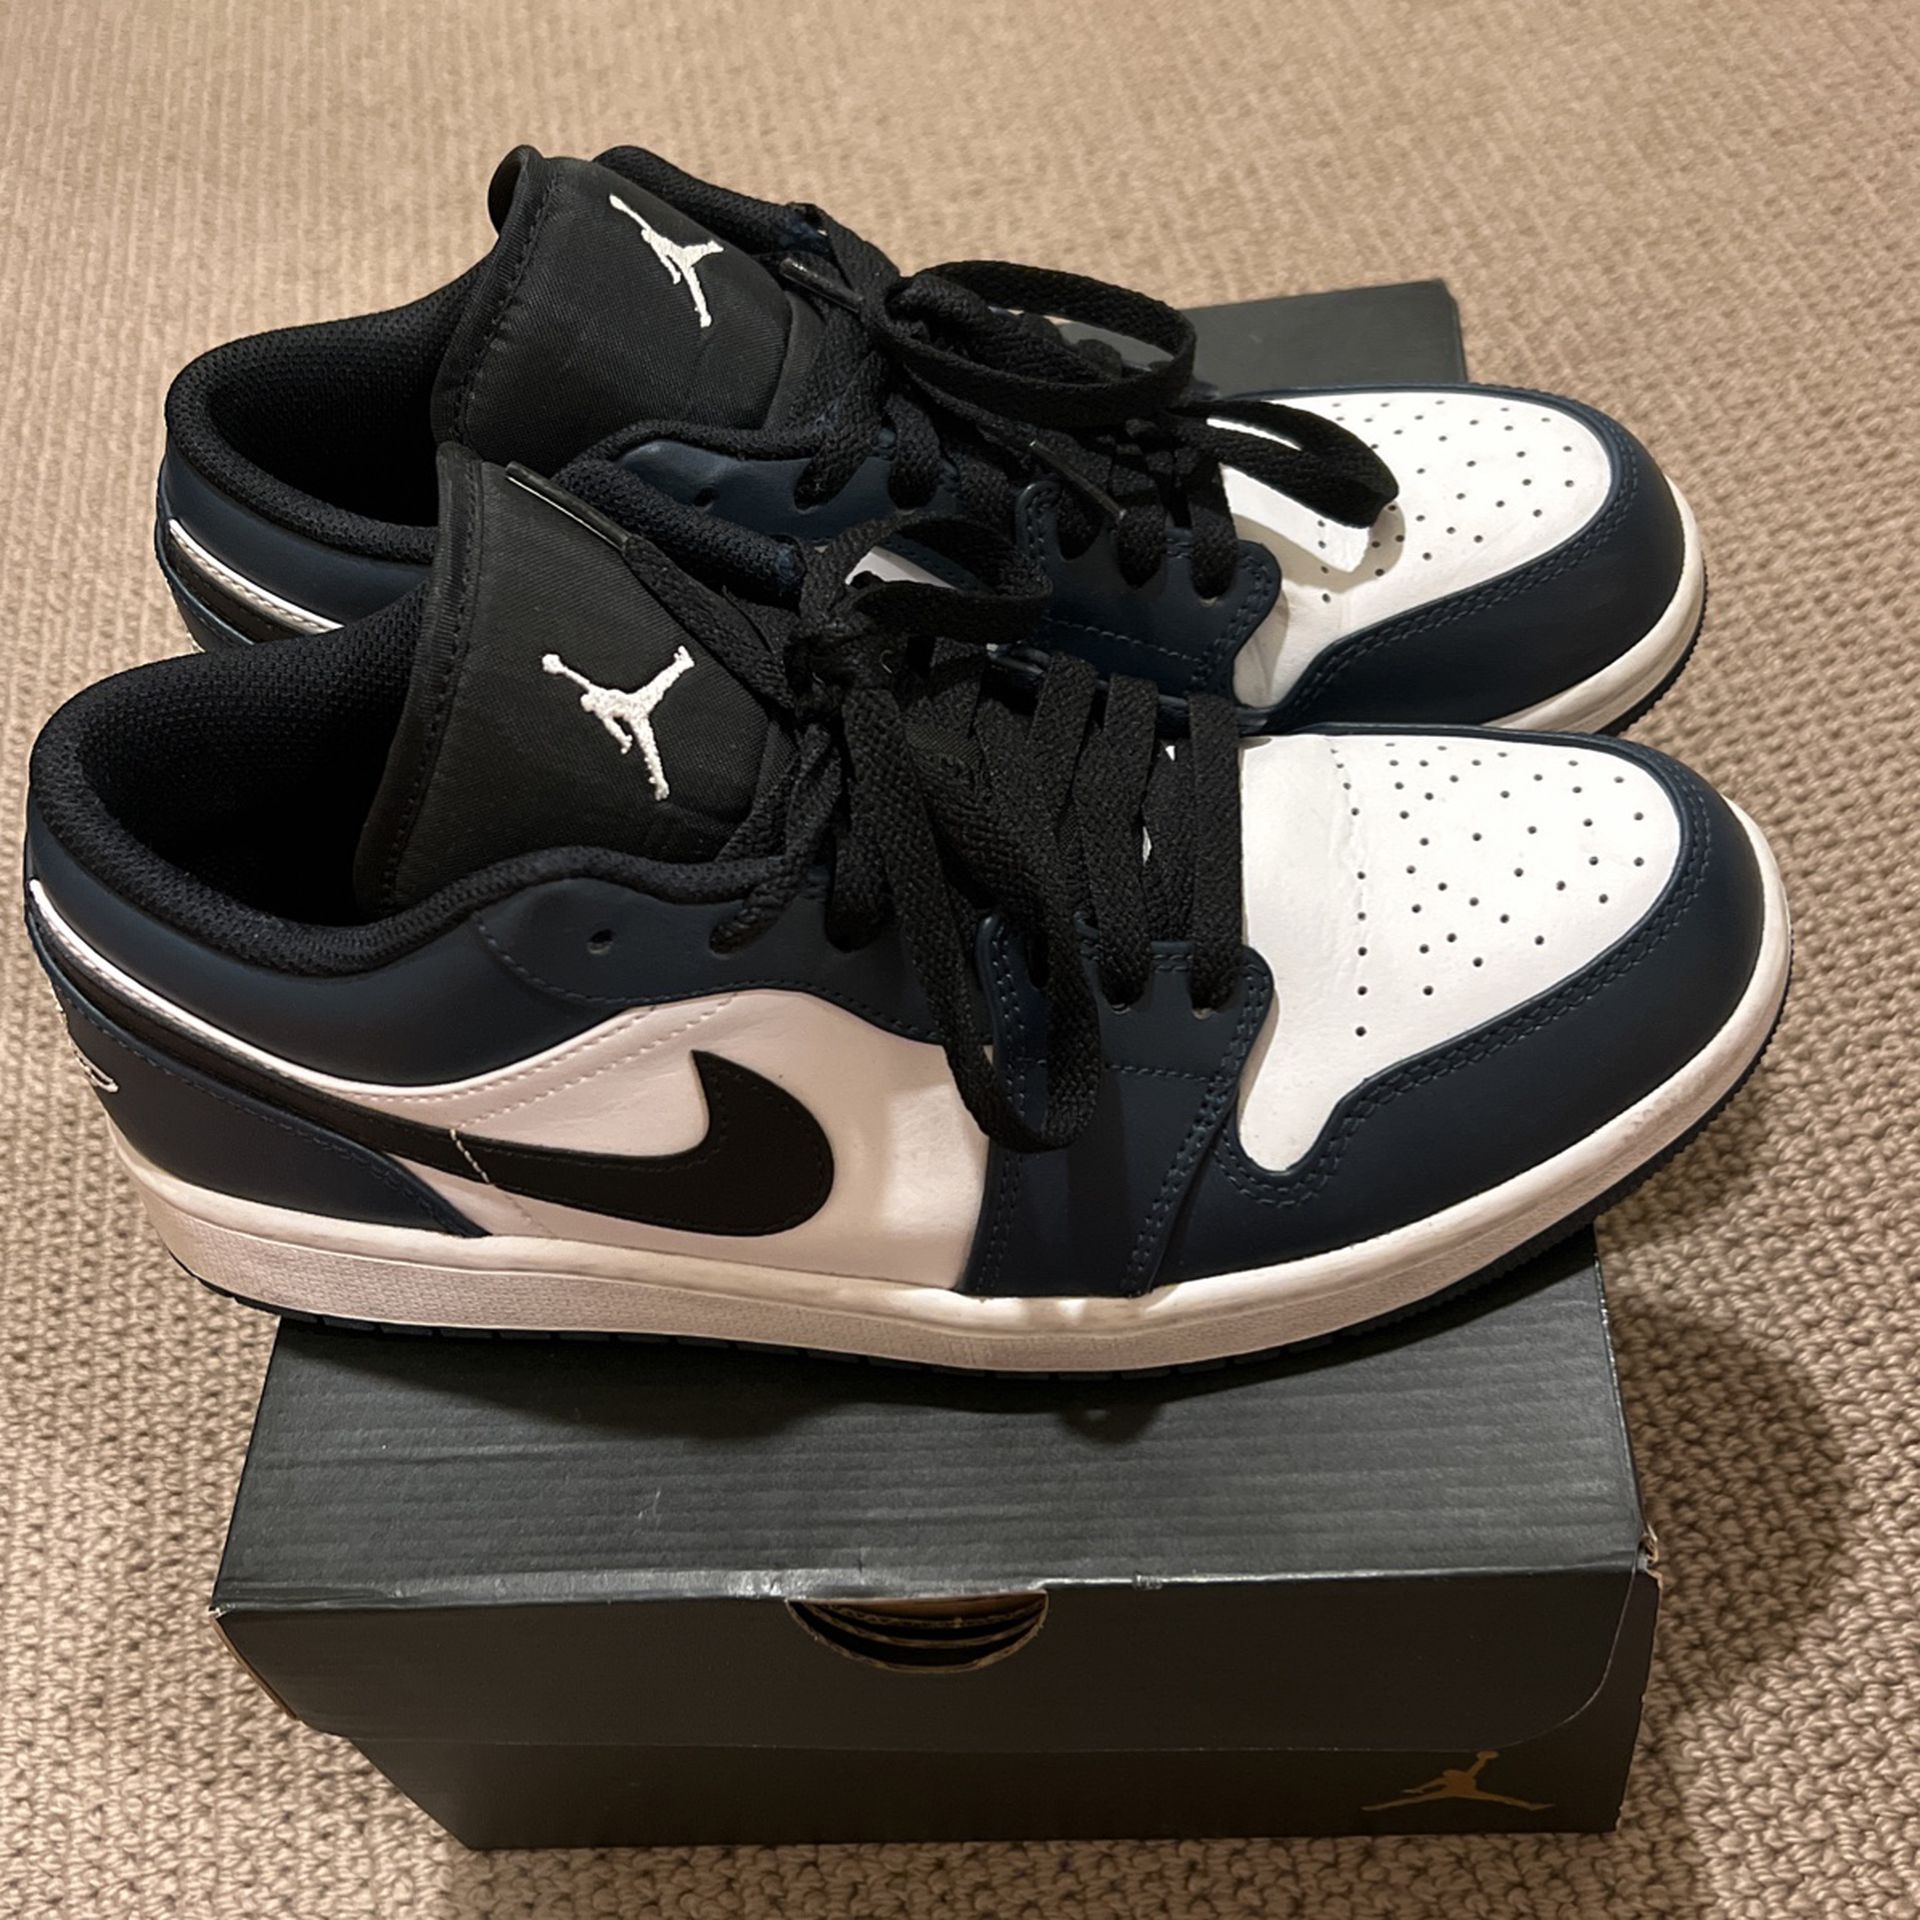 Air Jordan 1 Low ‘Dark Teal’ Size 9.5